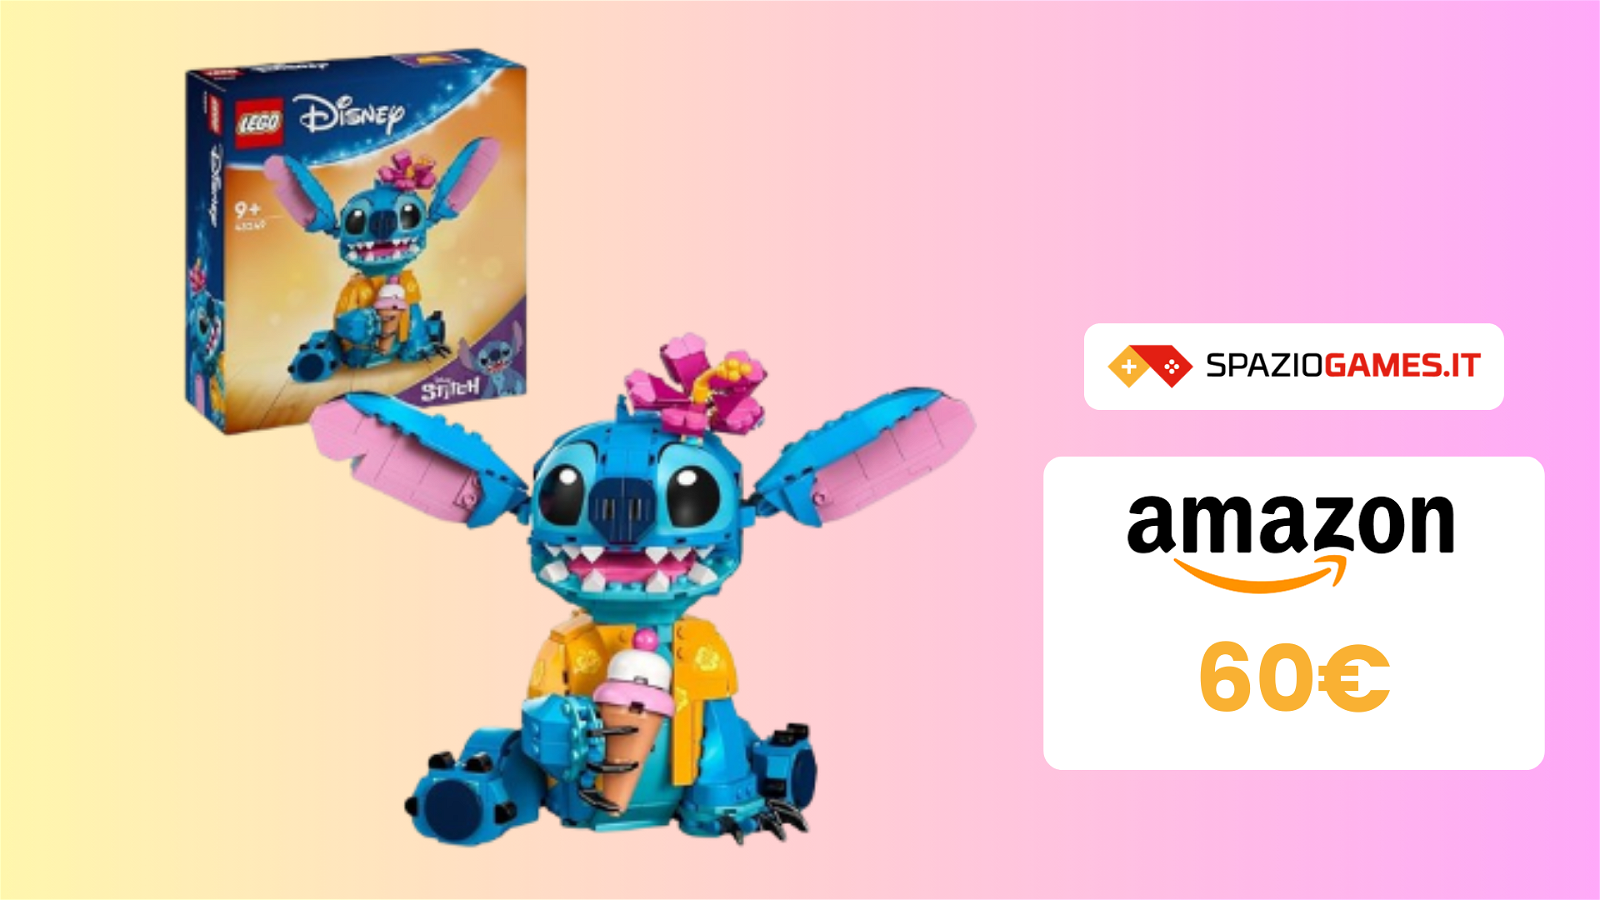 MAGNIFICO Stitch LEGO in offerta su Amazon!